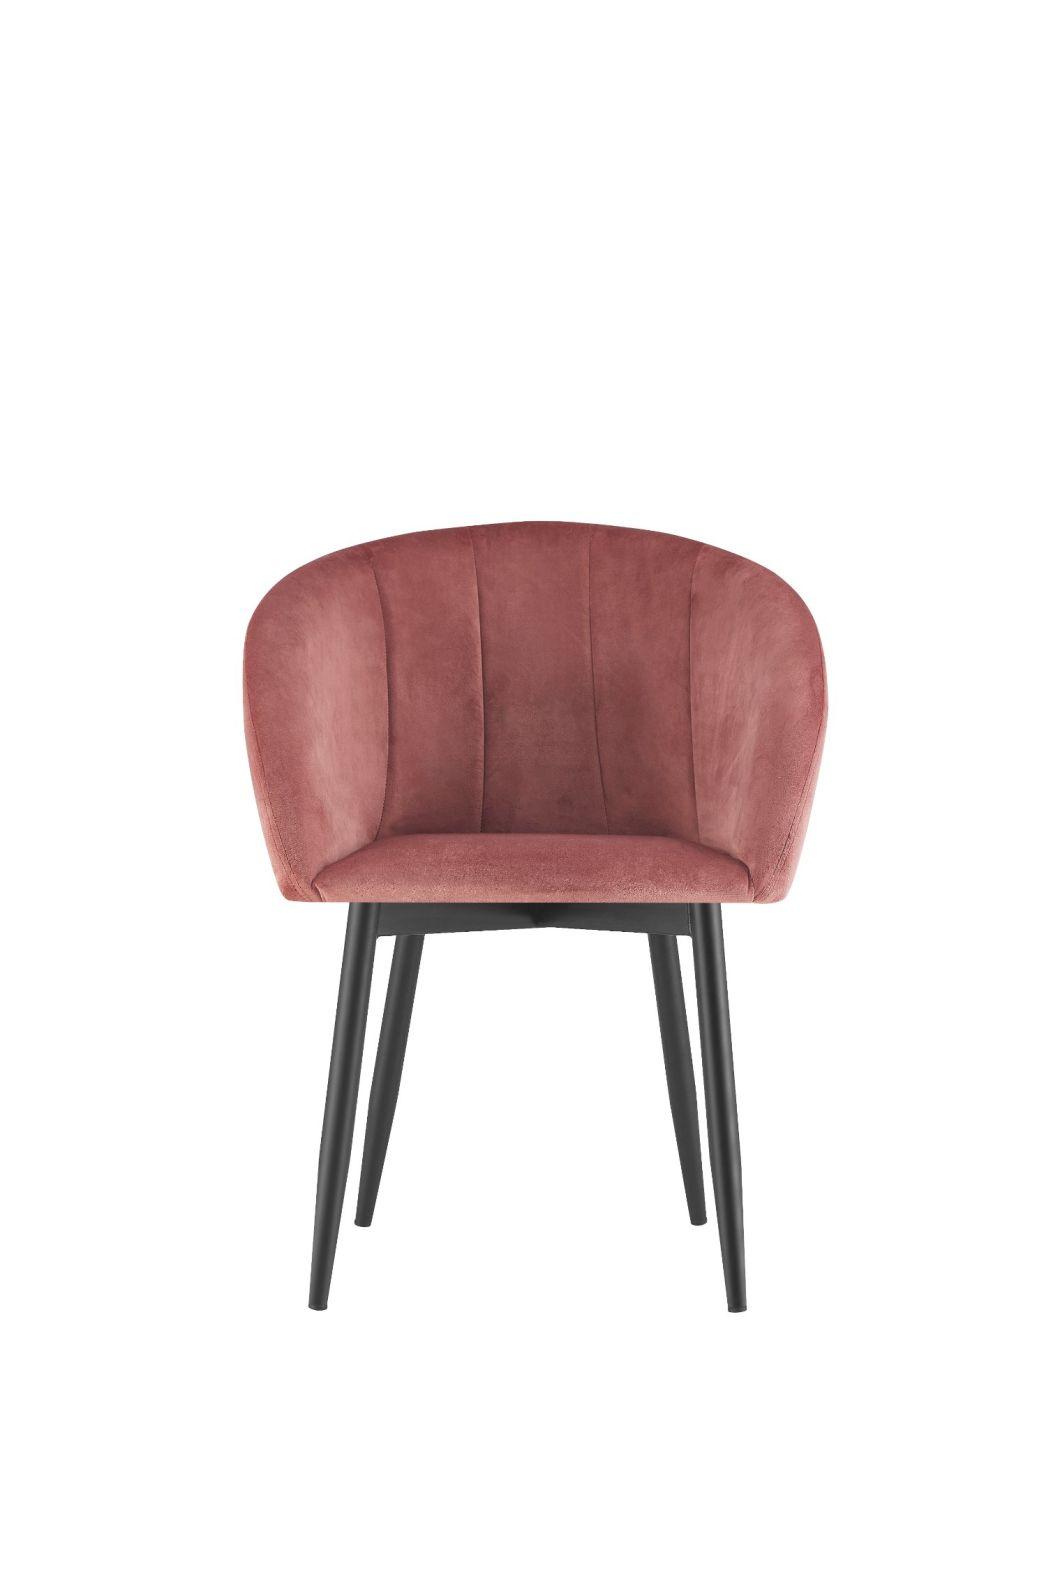 Modern Design Luxury Velvet Restaurant Room Fabric Dining Chairs for Dining Room